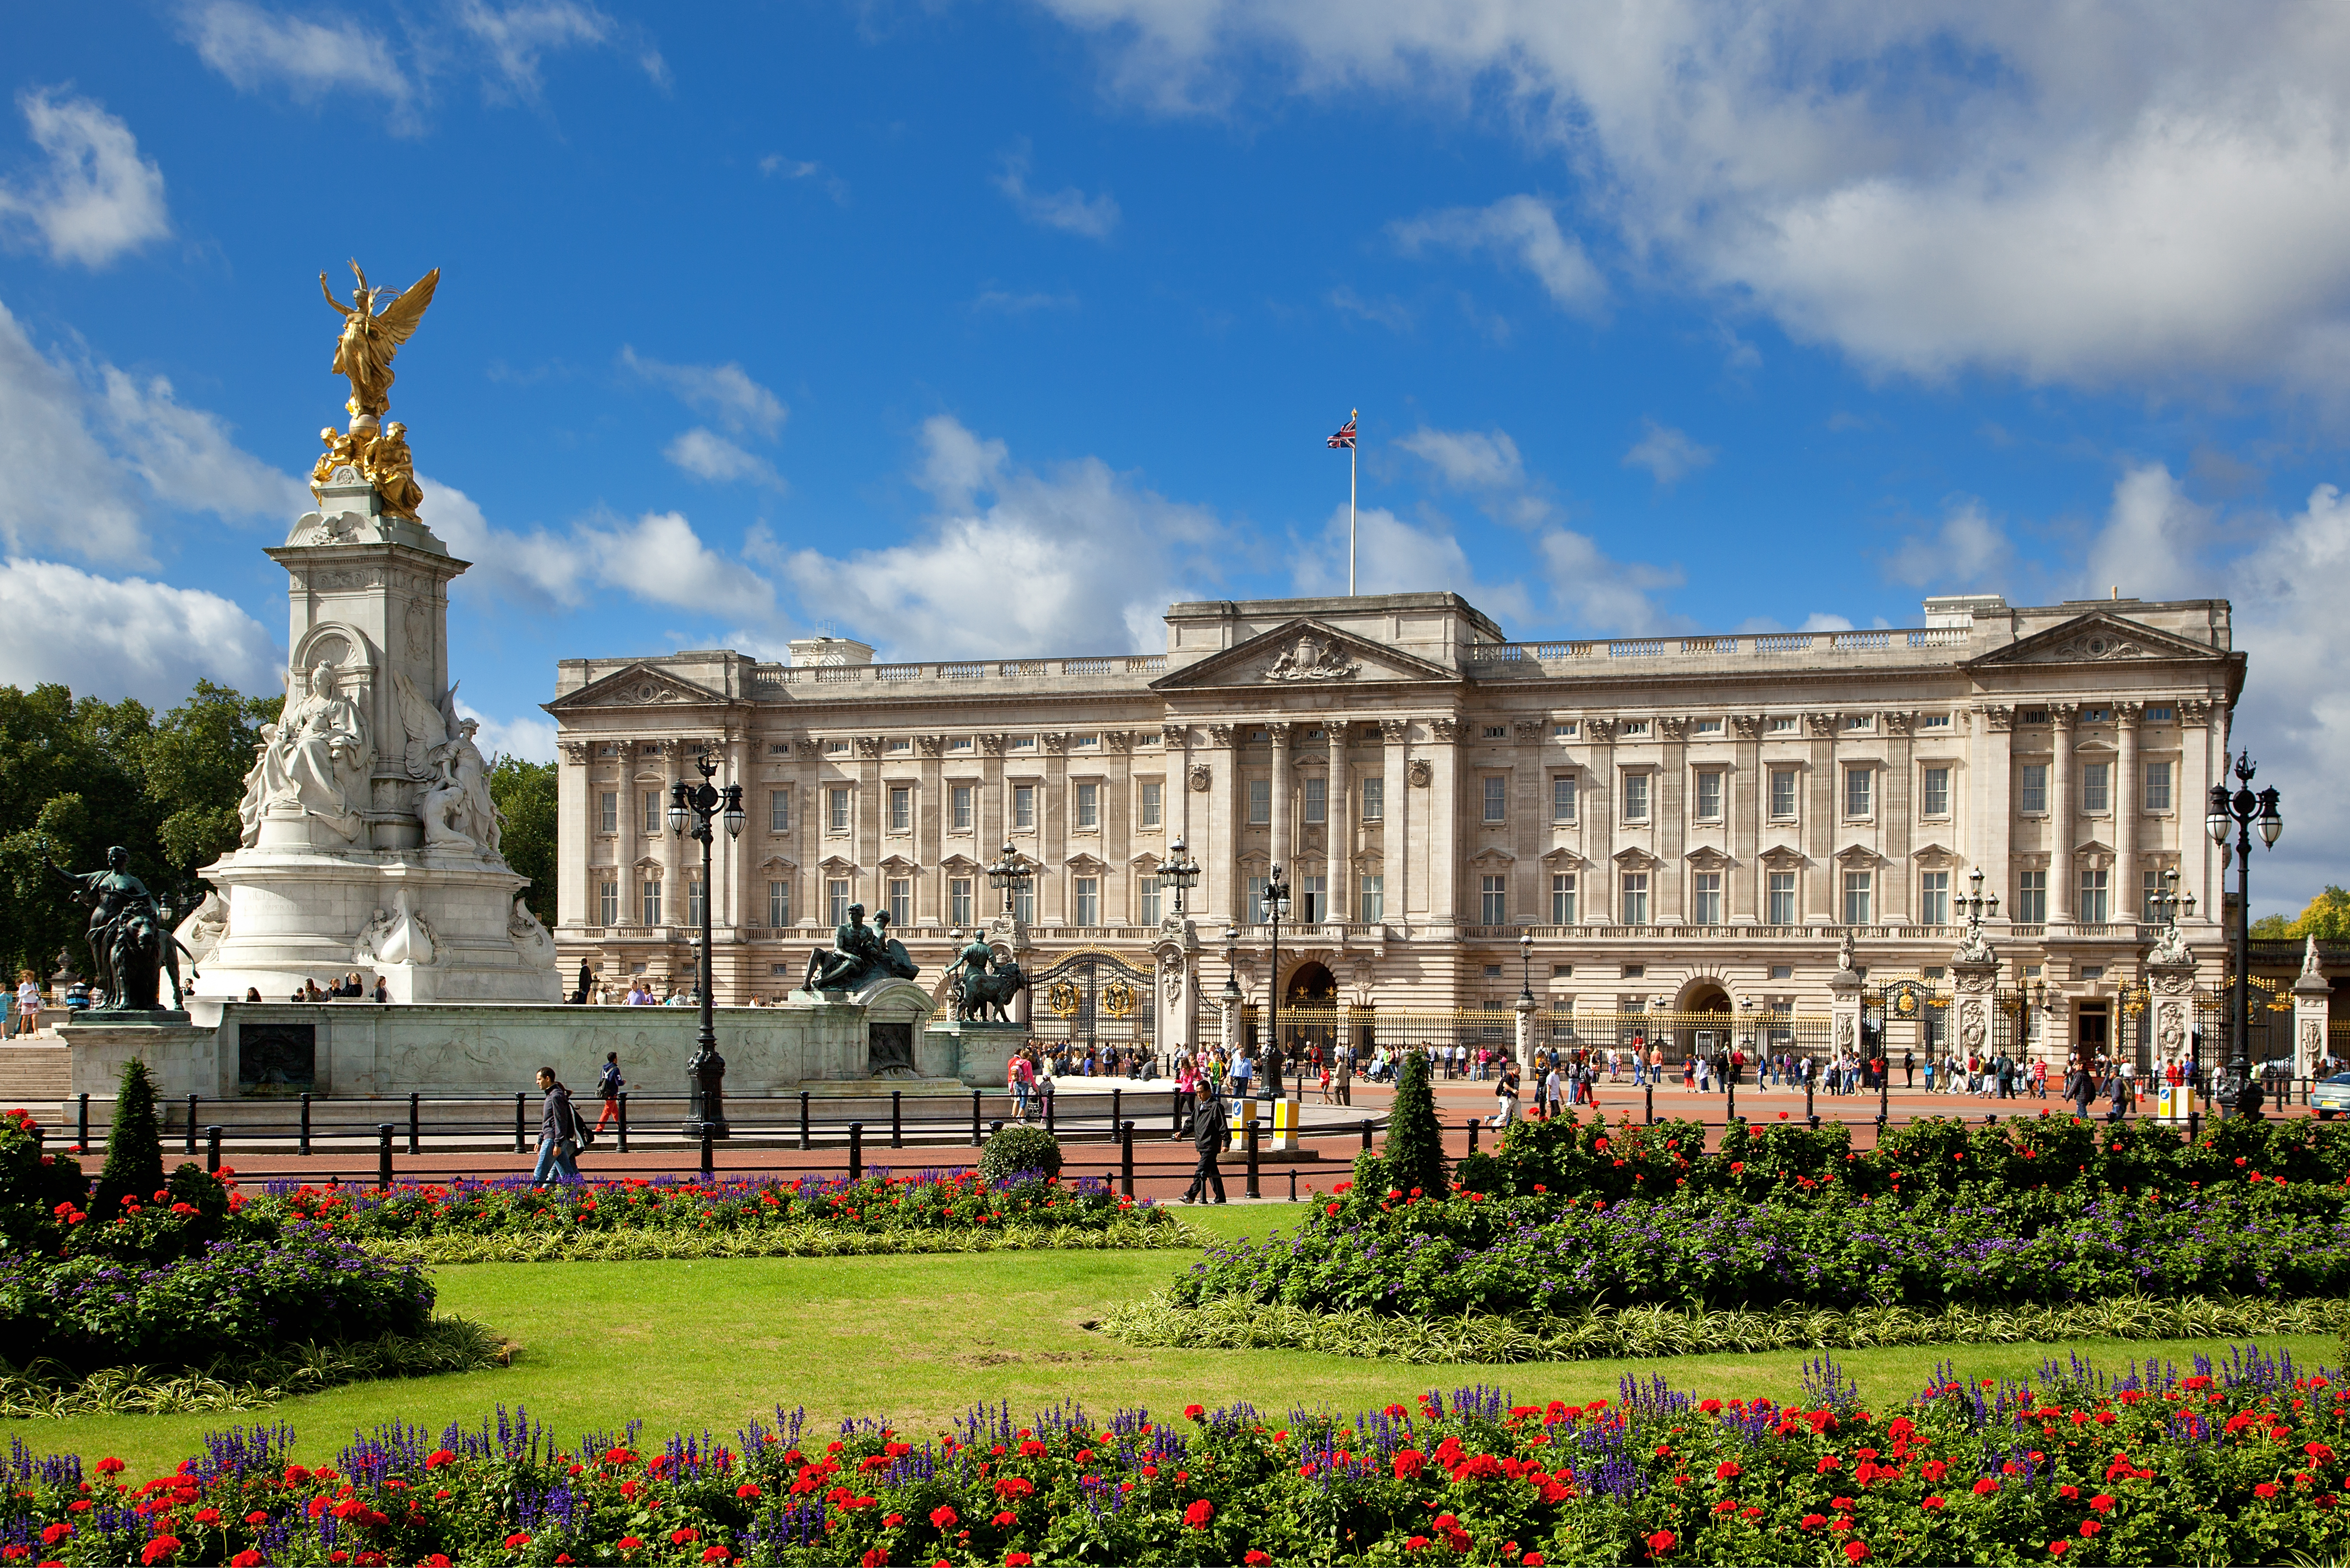 Le palais de Buckingham est l'endroit où se déroulent la plupart des tâches royales